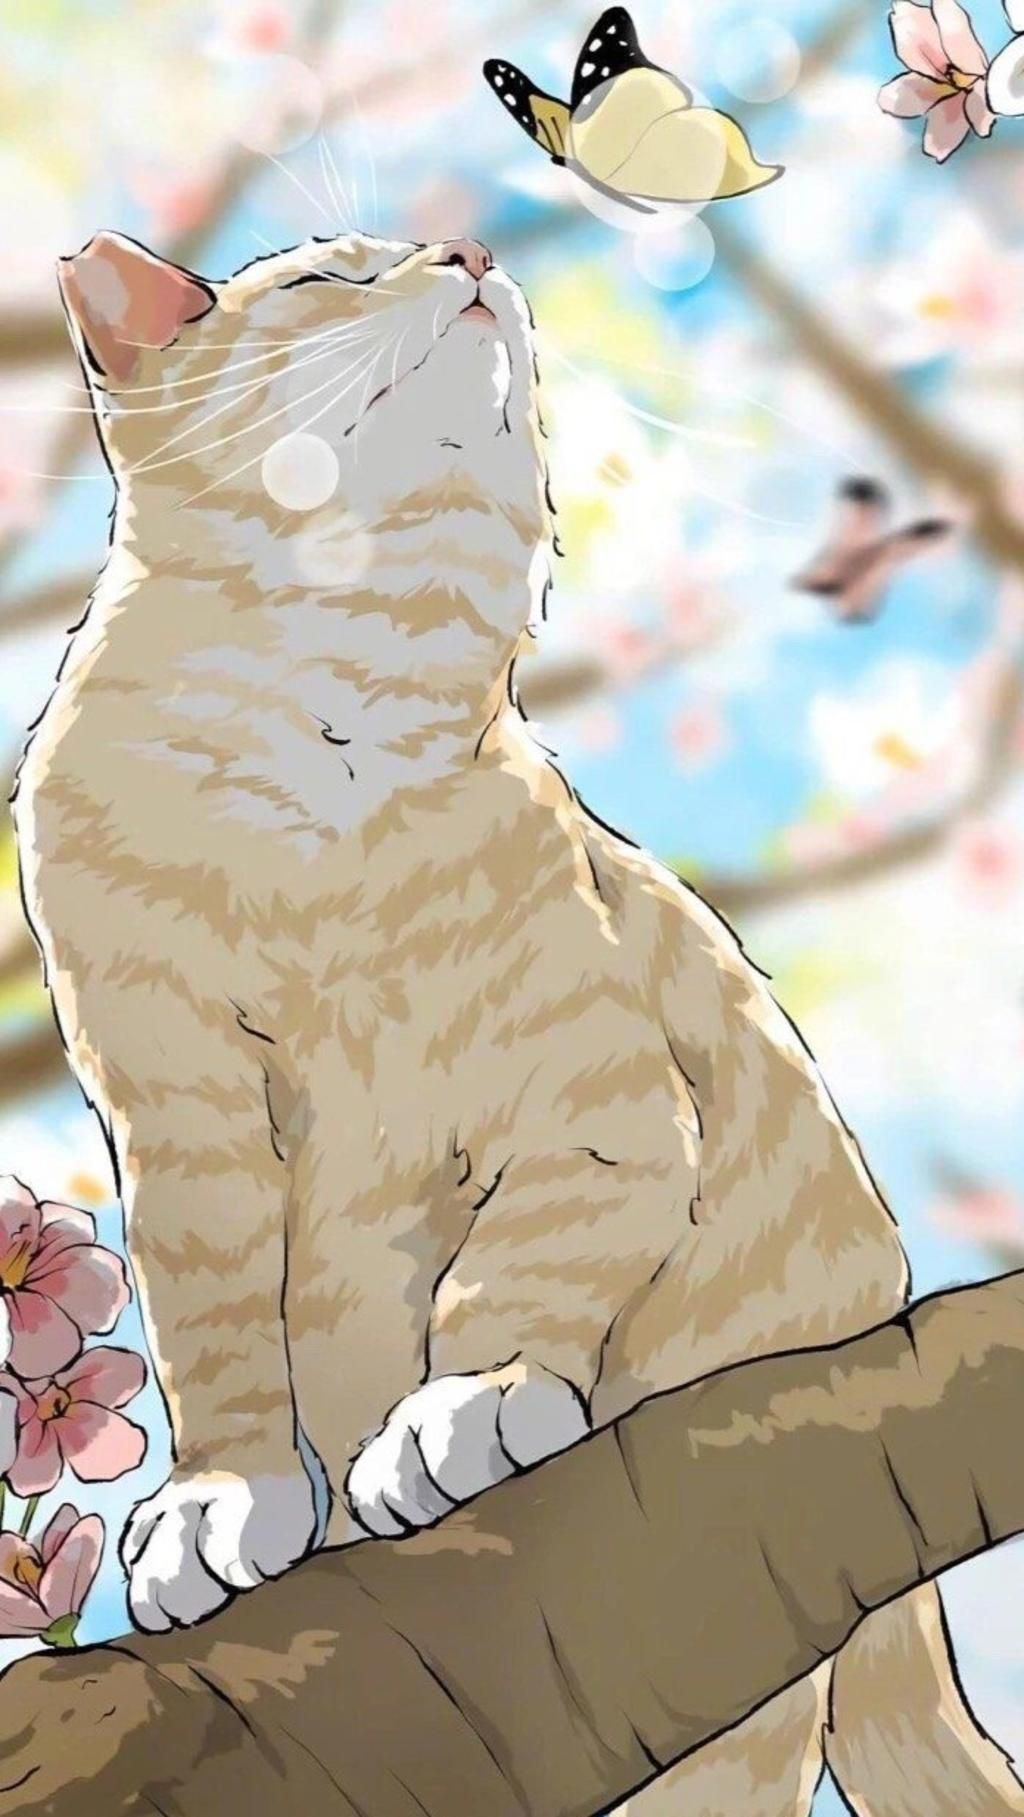 Vẽ mèo anime tuyệt vời: Nếu bạn yêu thích anime và mèo, thì những hình ảnh vẽ mèo anime tuyệt vời chắc chắn sẽ làm bạn mê mẩn. Với những nét vẽ đơn giản nhưng sắc sảo, mèo anime sẽ trở thành một trong những chủ đề vẽ tranh yêu thích của bạn.